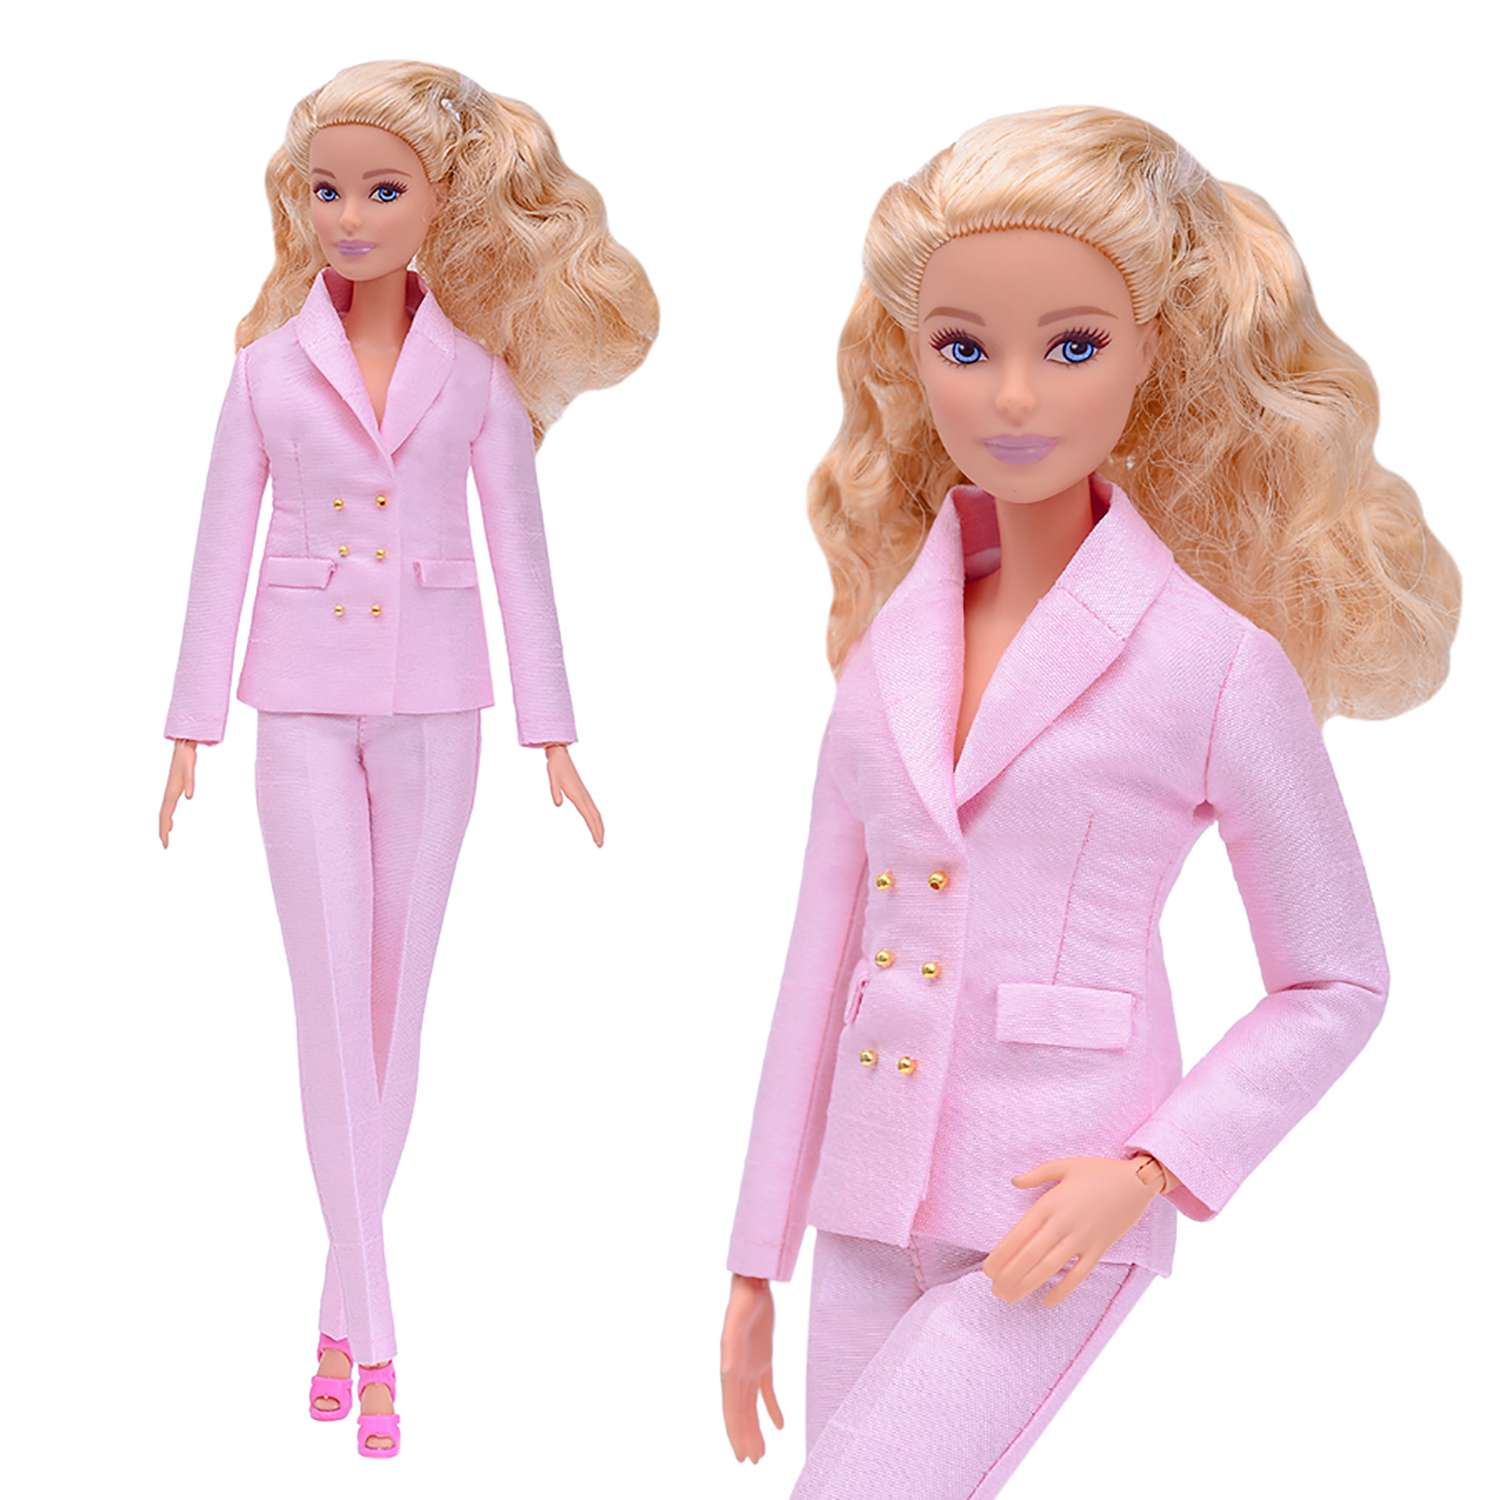 Шелковый брючный костюм Эленприв Светло-розовый для куклы 29 см типа Барби FA-011-04 - фото 2